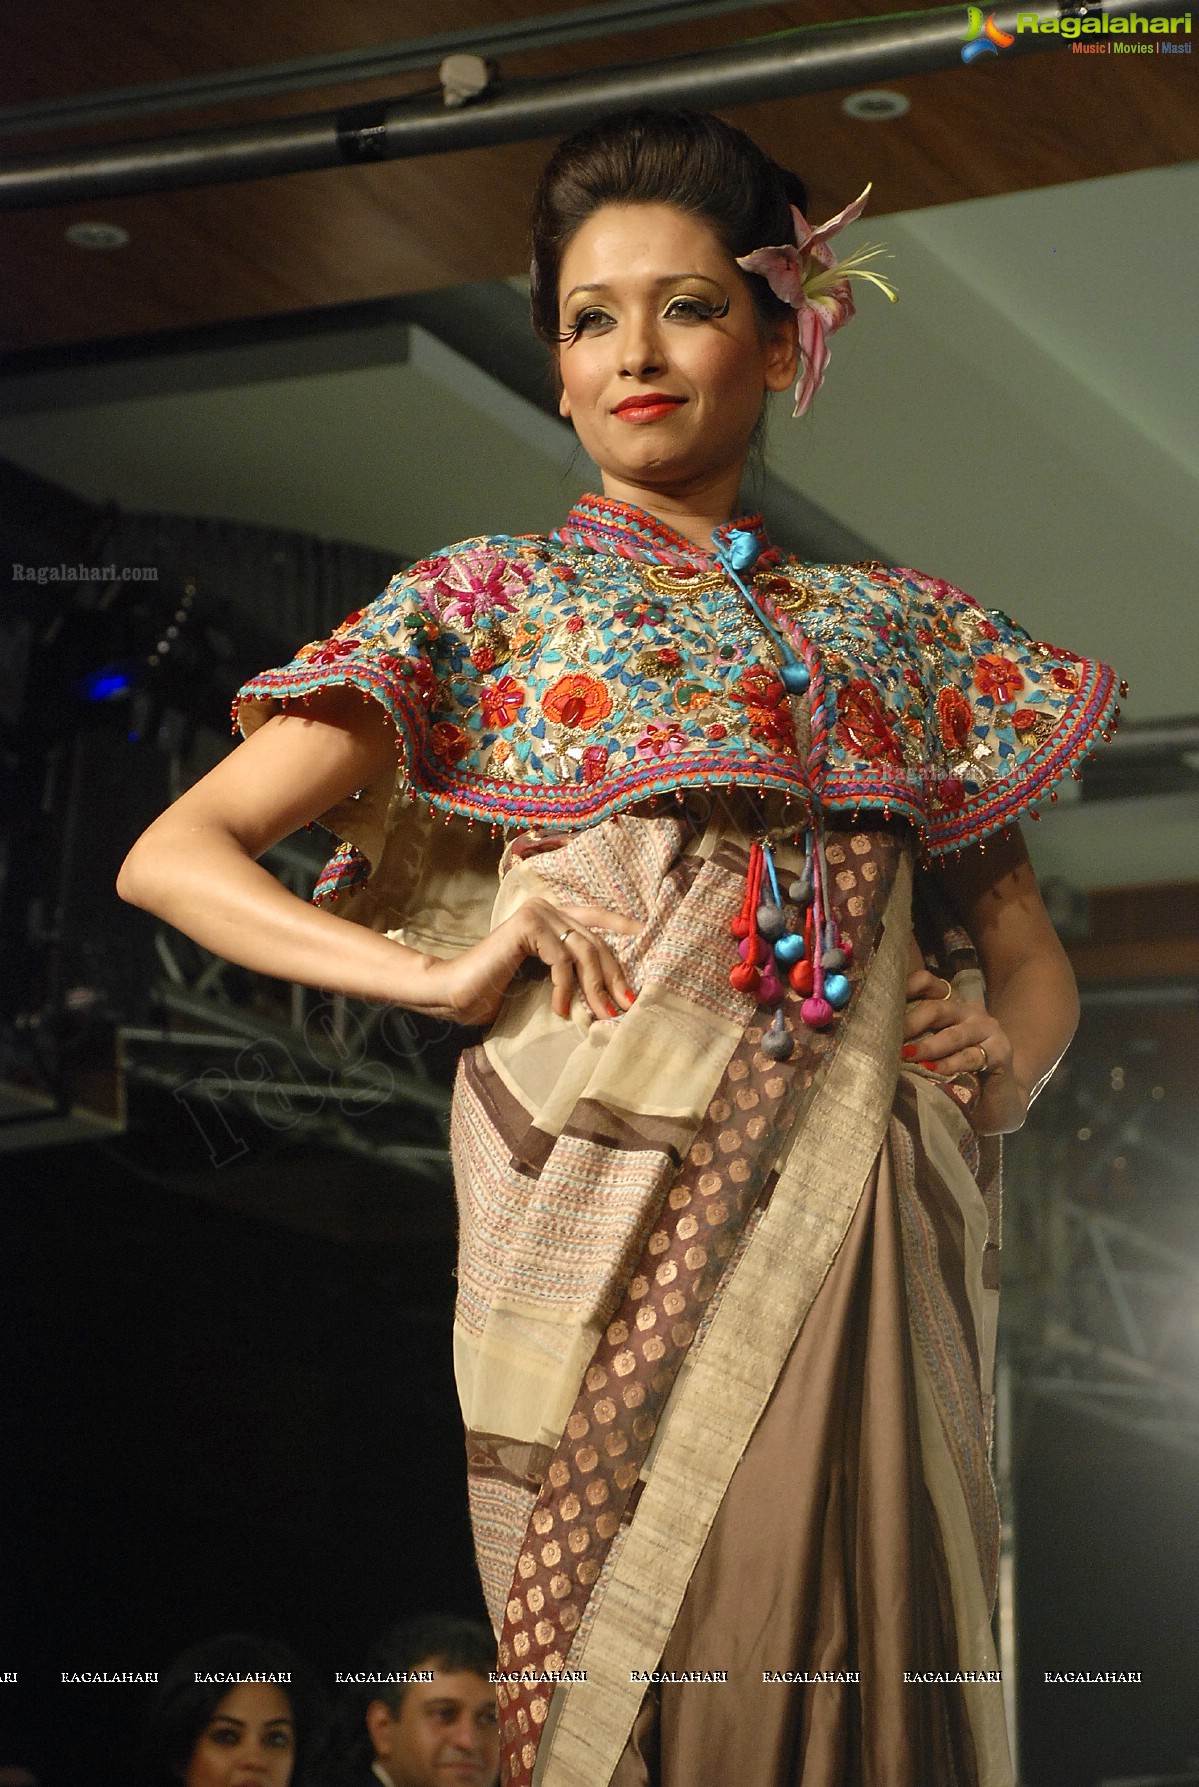 Hyderabad International Fashion Week 2011 (Day 3)